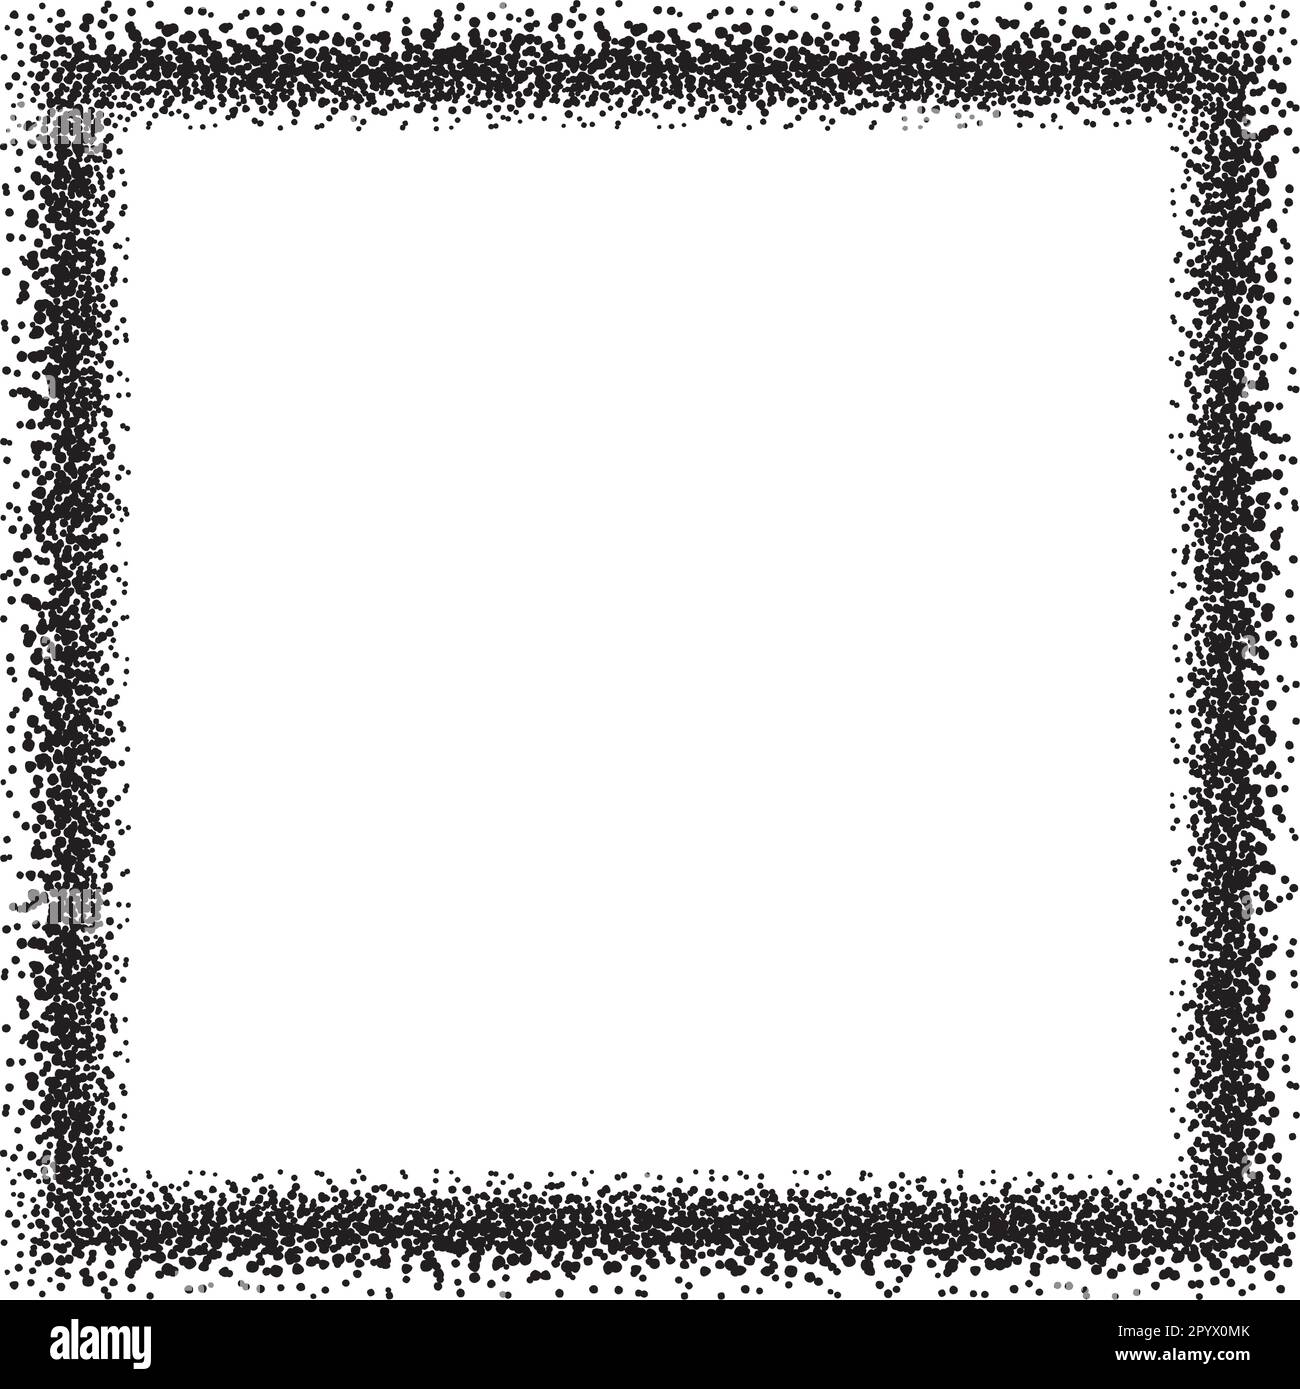 Ein quadratischer Rand, der als Rahmen für Ihre Designs verwendet werden kann, mit unregelmäßigen schwarzen Punkten. Stock Vektor